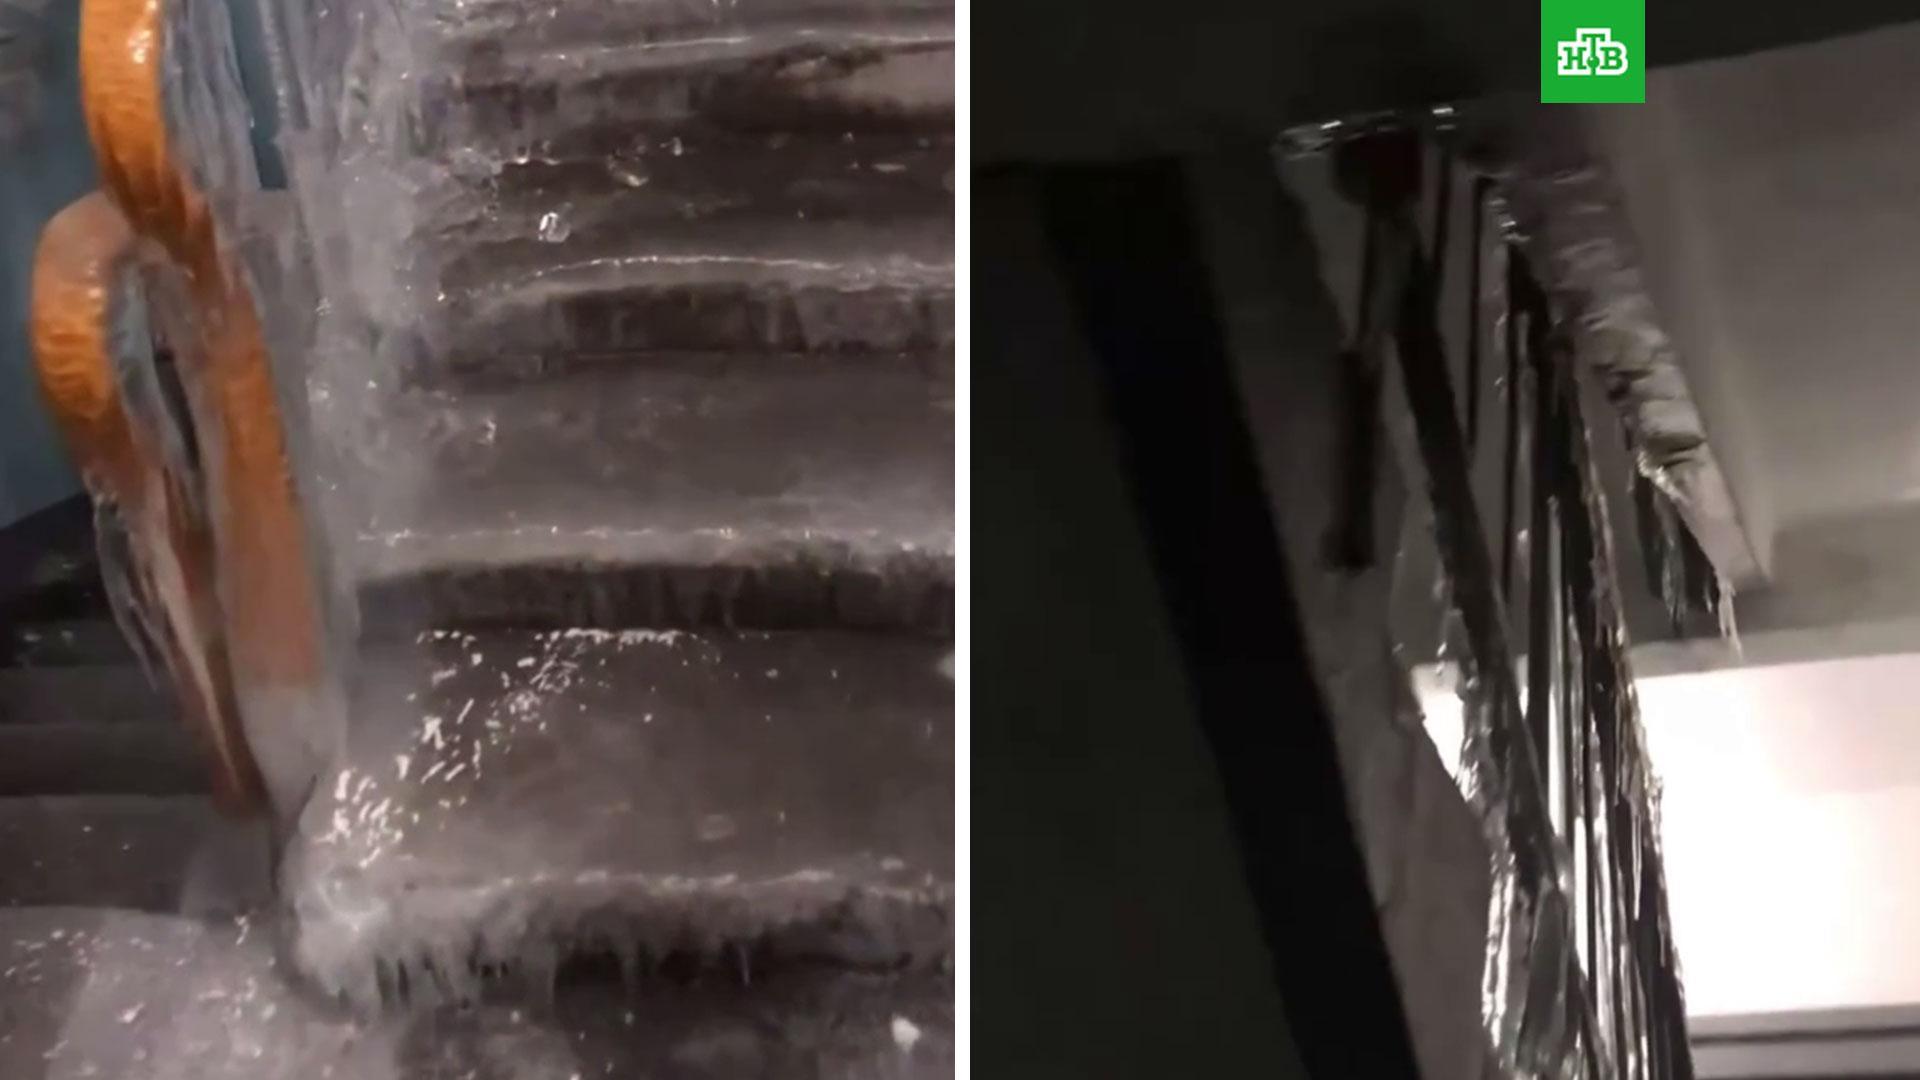 Вода покрылась коркой льда. Прорвало трубу в подъезде. Замерзший подъезд. Ледяная корка на лестницах. Подъезд обледенел.